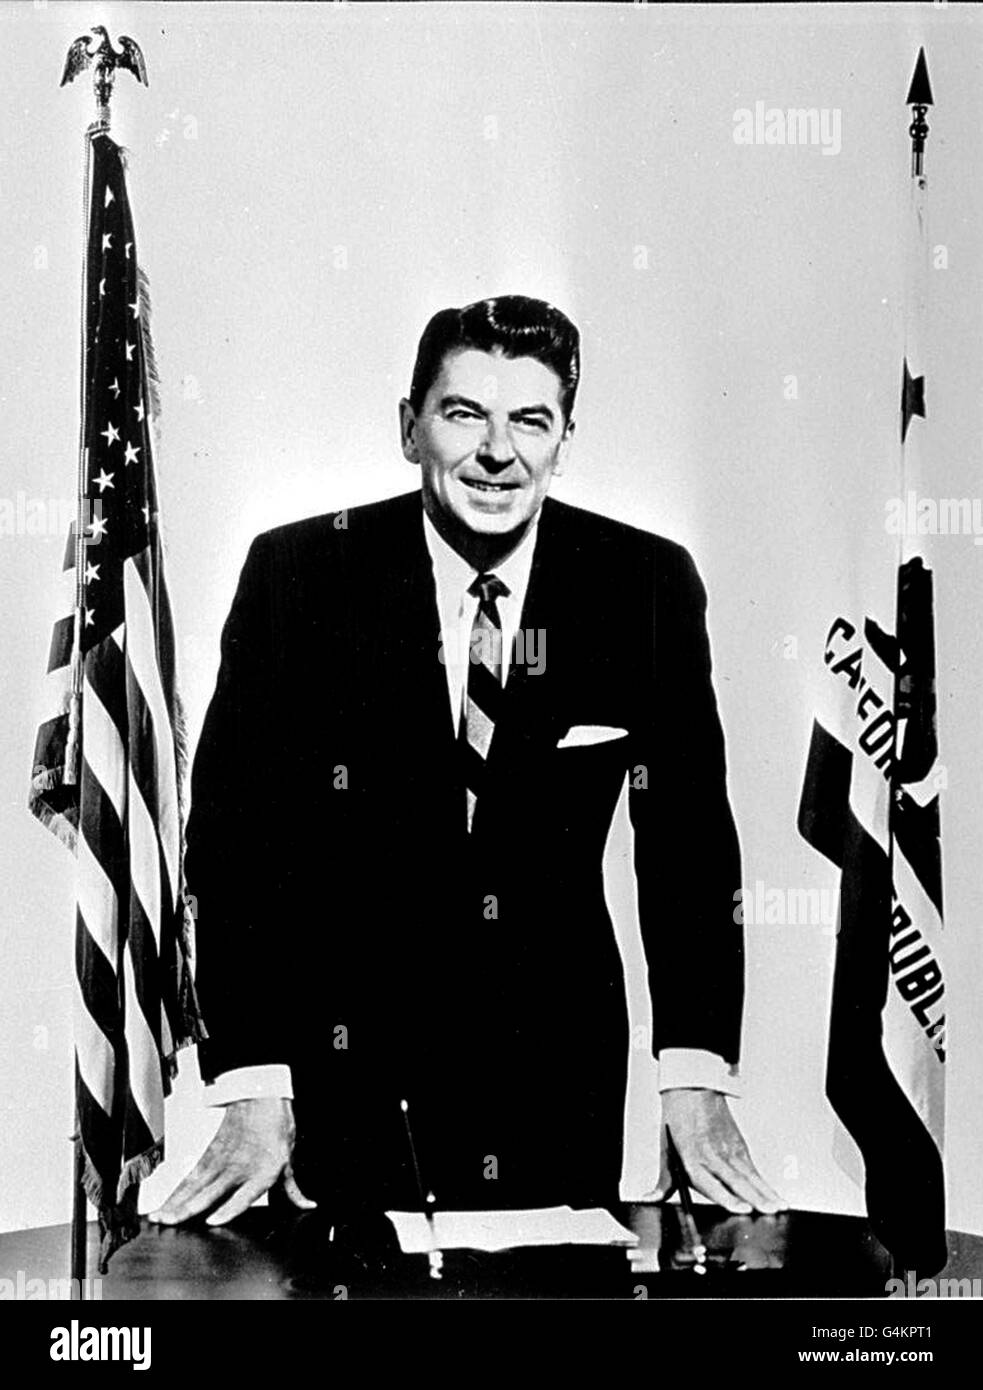 Ronald Reagan, gouverneur de la Californie. *05/06/04: L'ancien président américain Ronald Reagan est mort un ami de la famille a dit. Banque D'Images